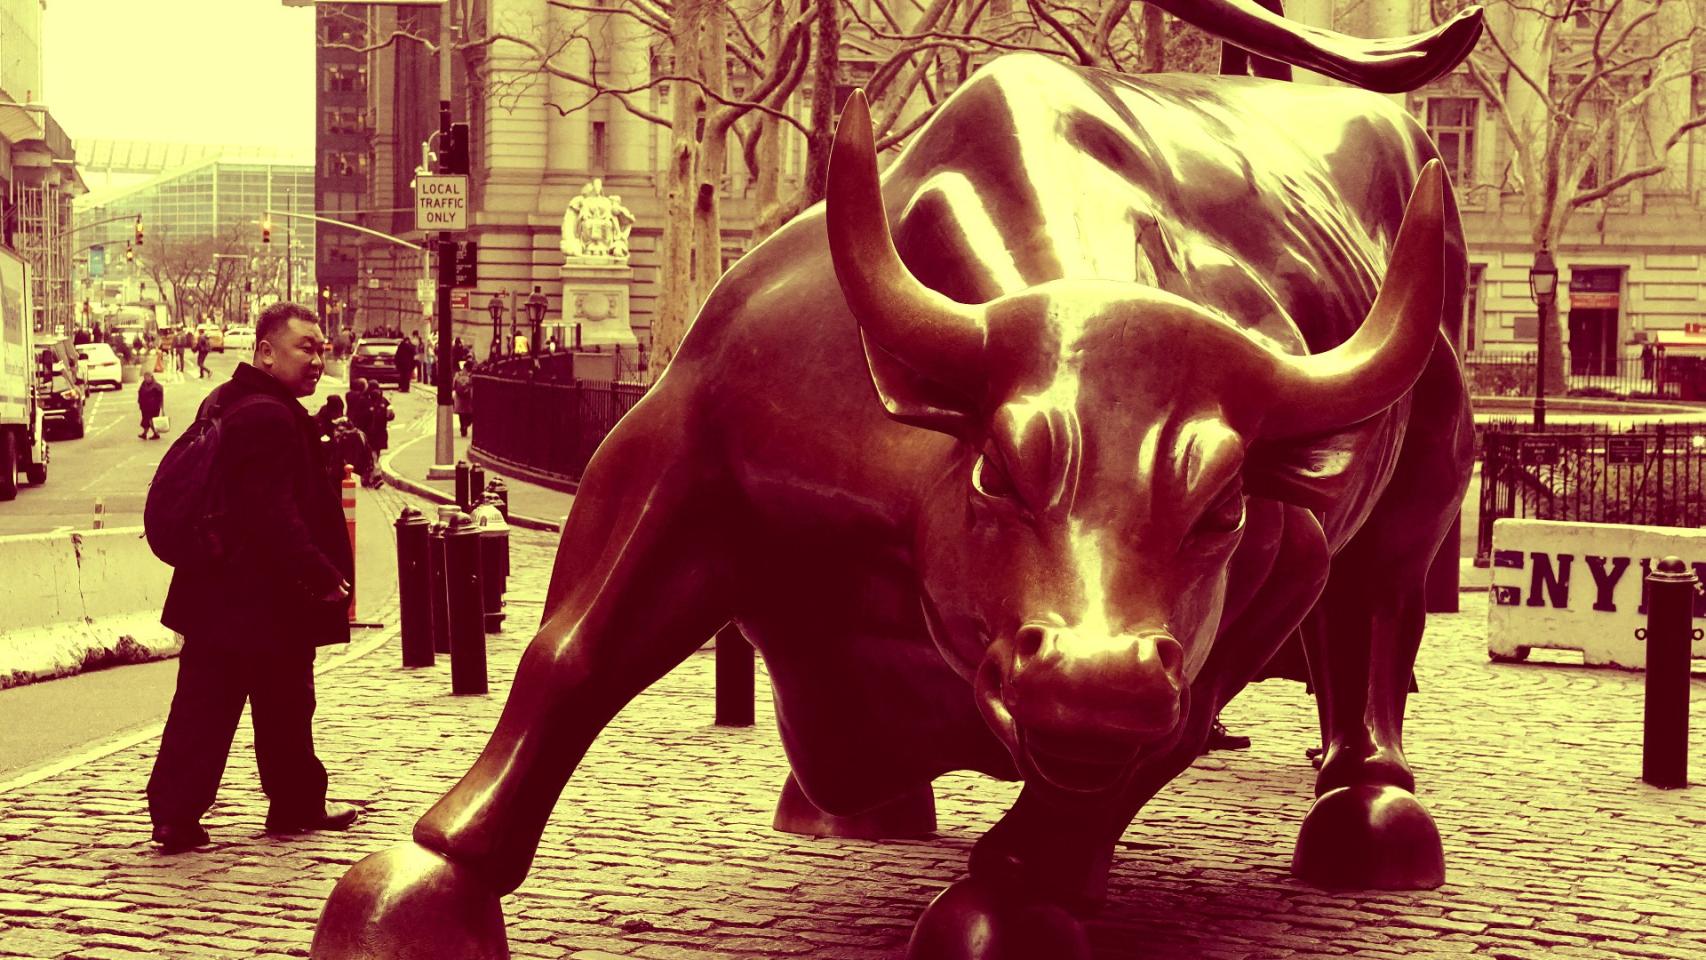 Estatua del Toro de Wall Street en Nueva York, Estados Unidos.